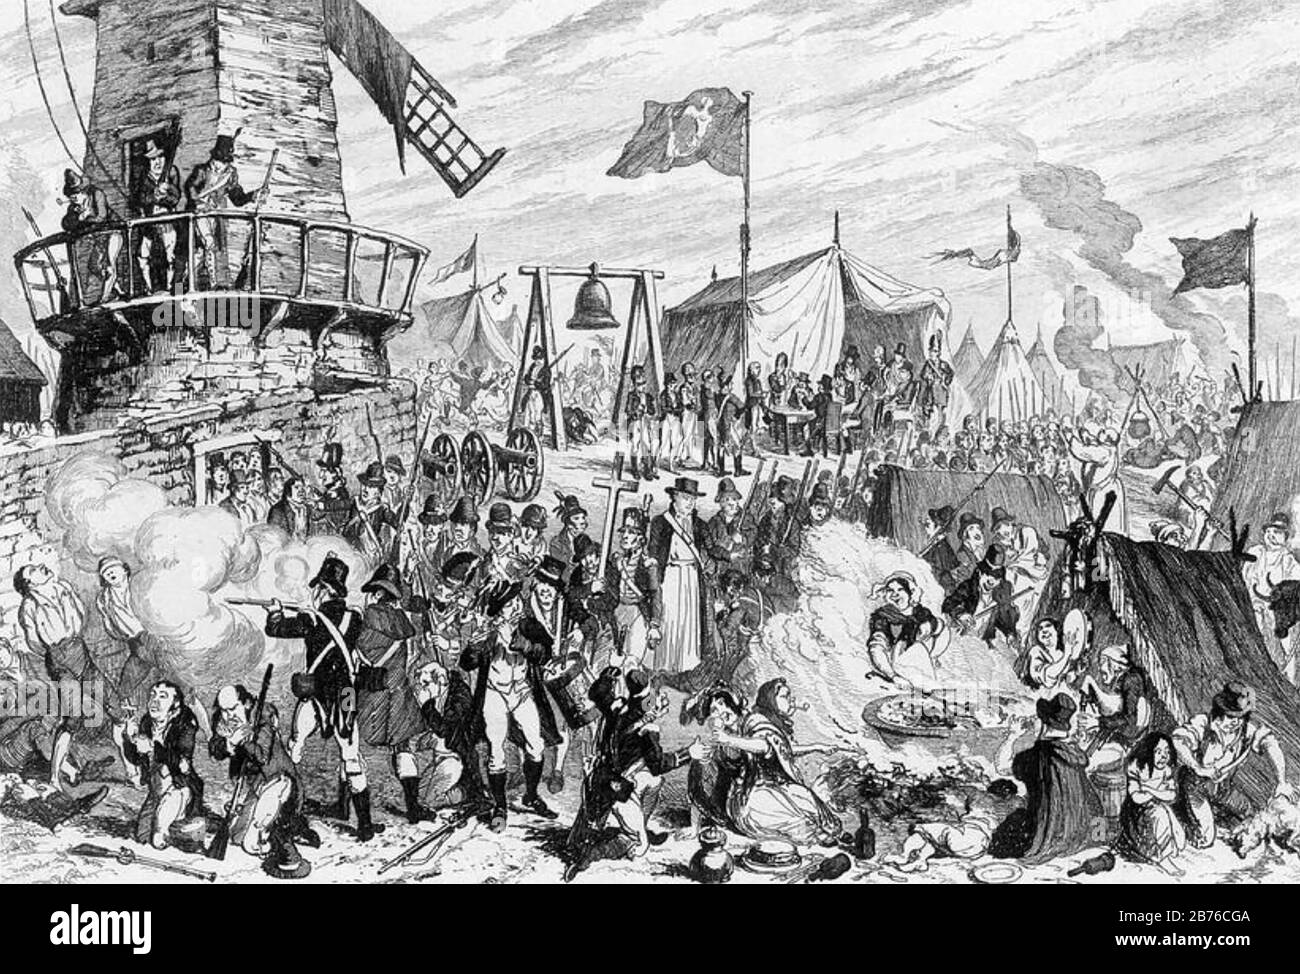 SCHLACHT VON ESSIG HILL 21. Juni 1798, Enniscorthy, County Wexford. George Cruikshanks Cartoon "Lappooning the United Irishmen", erschienen in William Maxwells "History of the Irish Rebellion" im Jahr 1798, die im Jahr 1844 veröffentlicht wurde Stockfoto